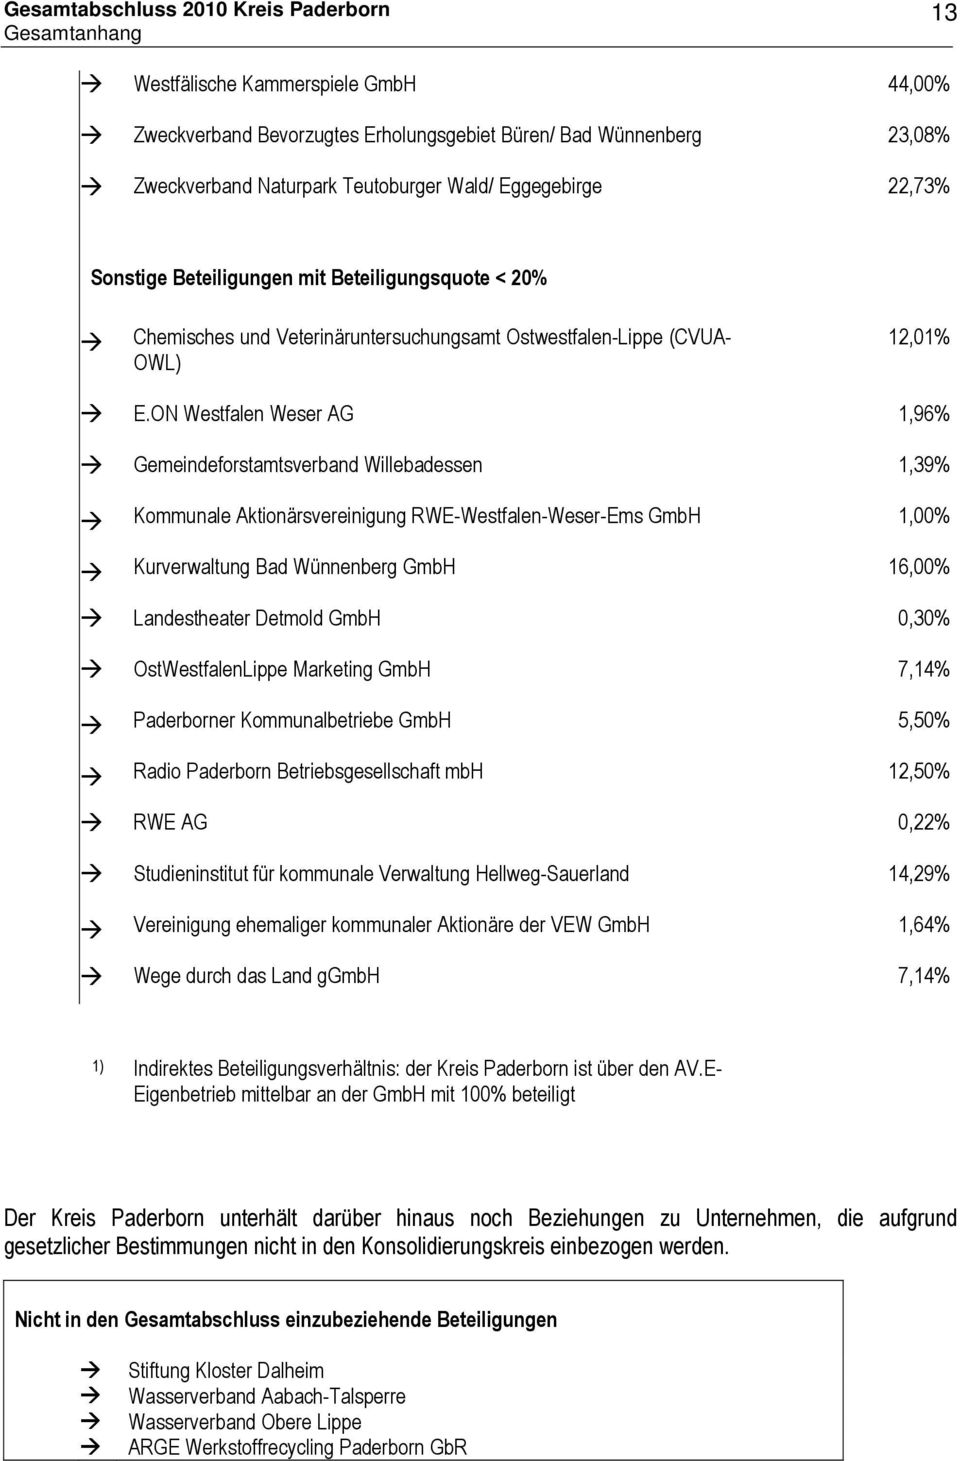 ON Westfalen Weser AG 1,96% Gemeindeforstamtsverband Willebadessen 1,39% Kommunale Aktionärsvereinigung RWE-Westfalen-Weser-Ems GmbH 1,00% Kurverwaltung Bad Wünnenberg GmbH 16,00% Landestheater